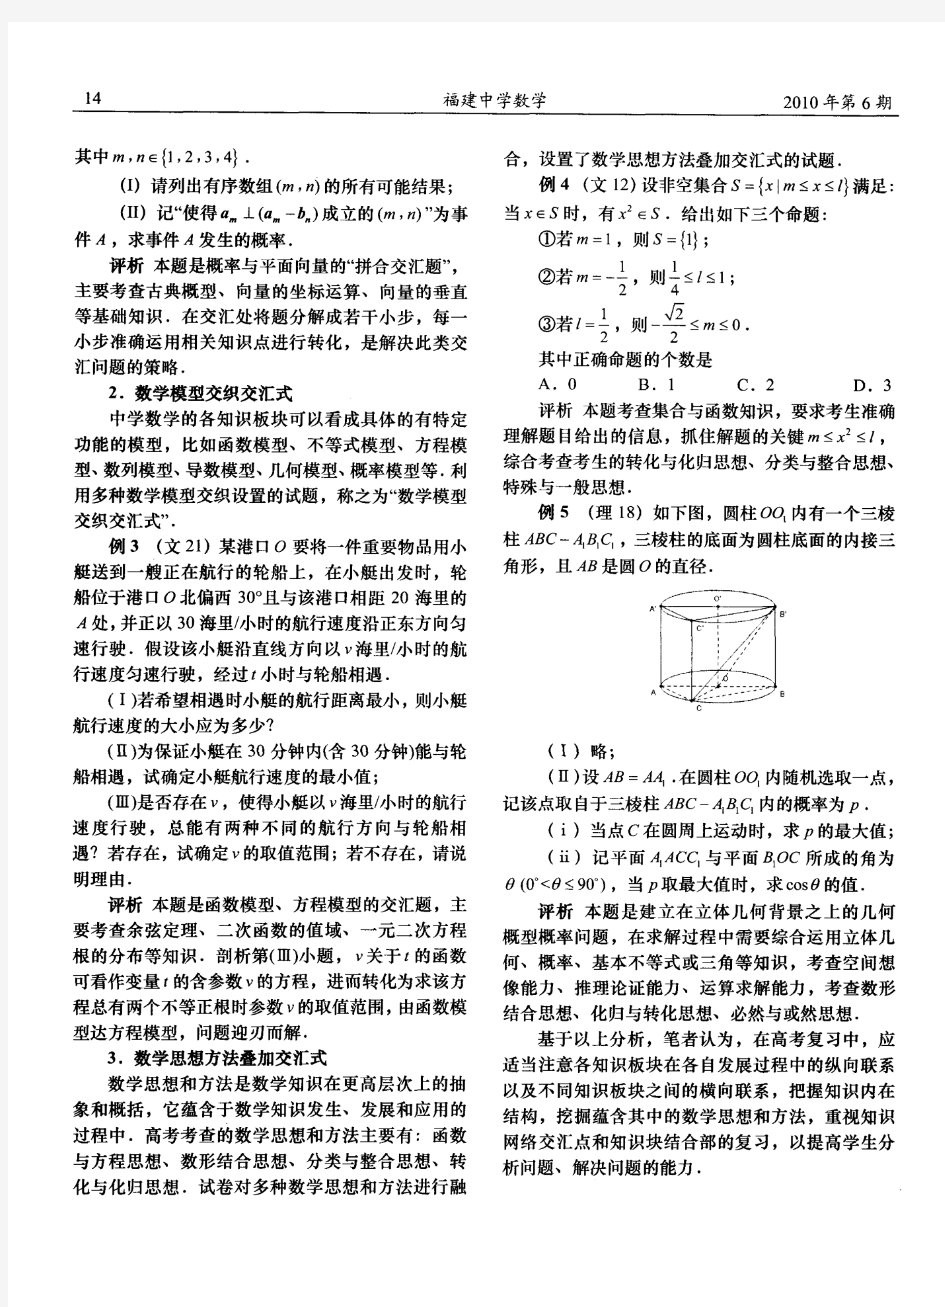 2010年福建省高考数学试卷评析(七)基于交汇的试卷评析